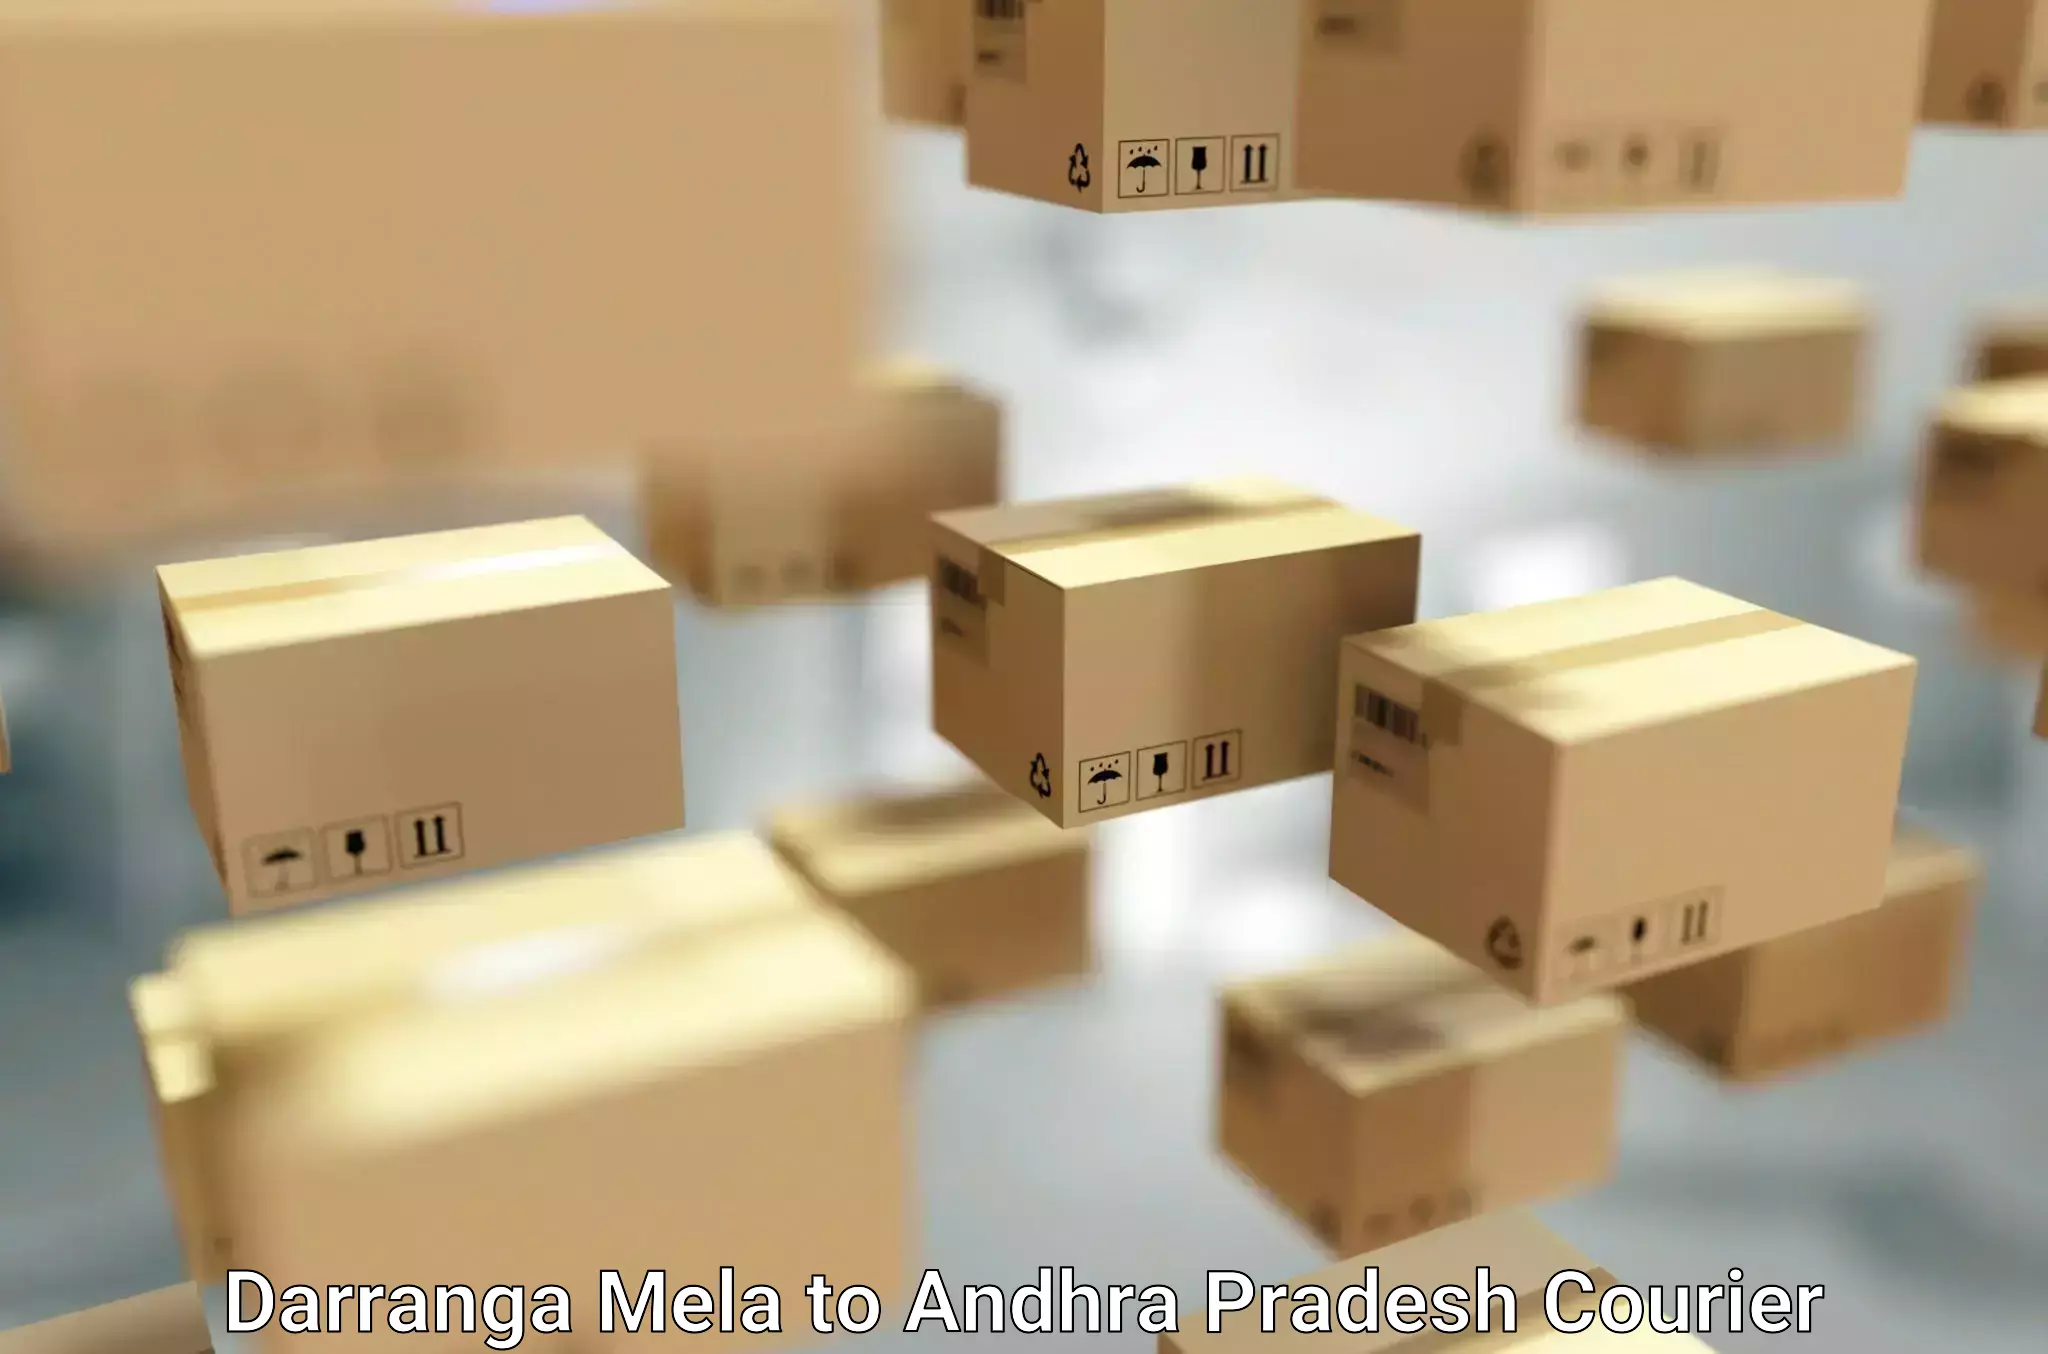 Quality moving company Darranga Mela to Andhra Pradesh